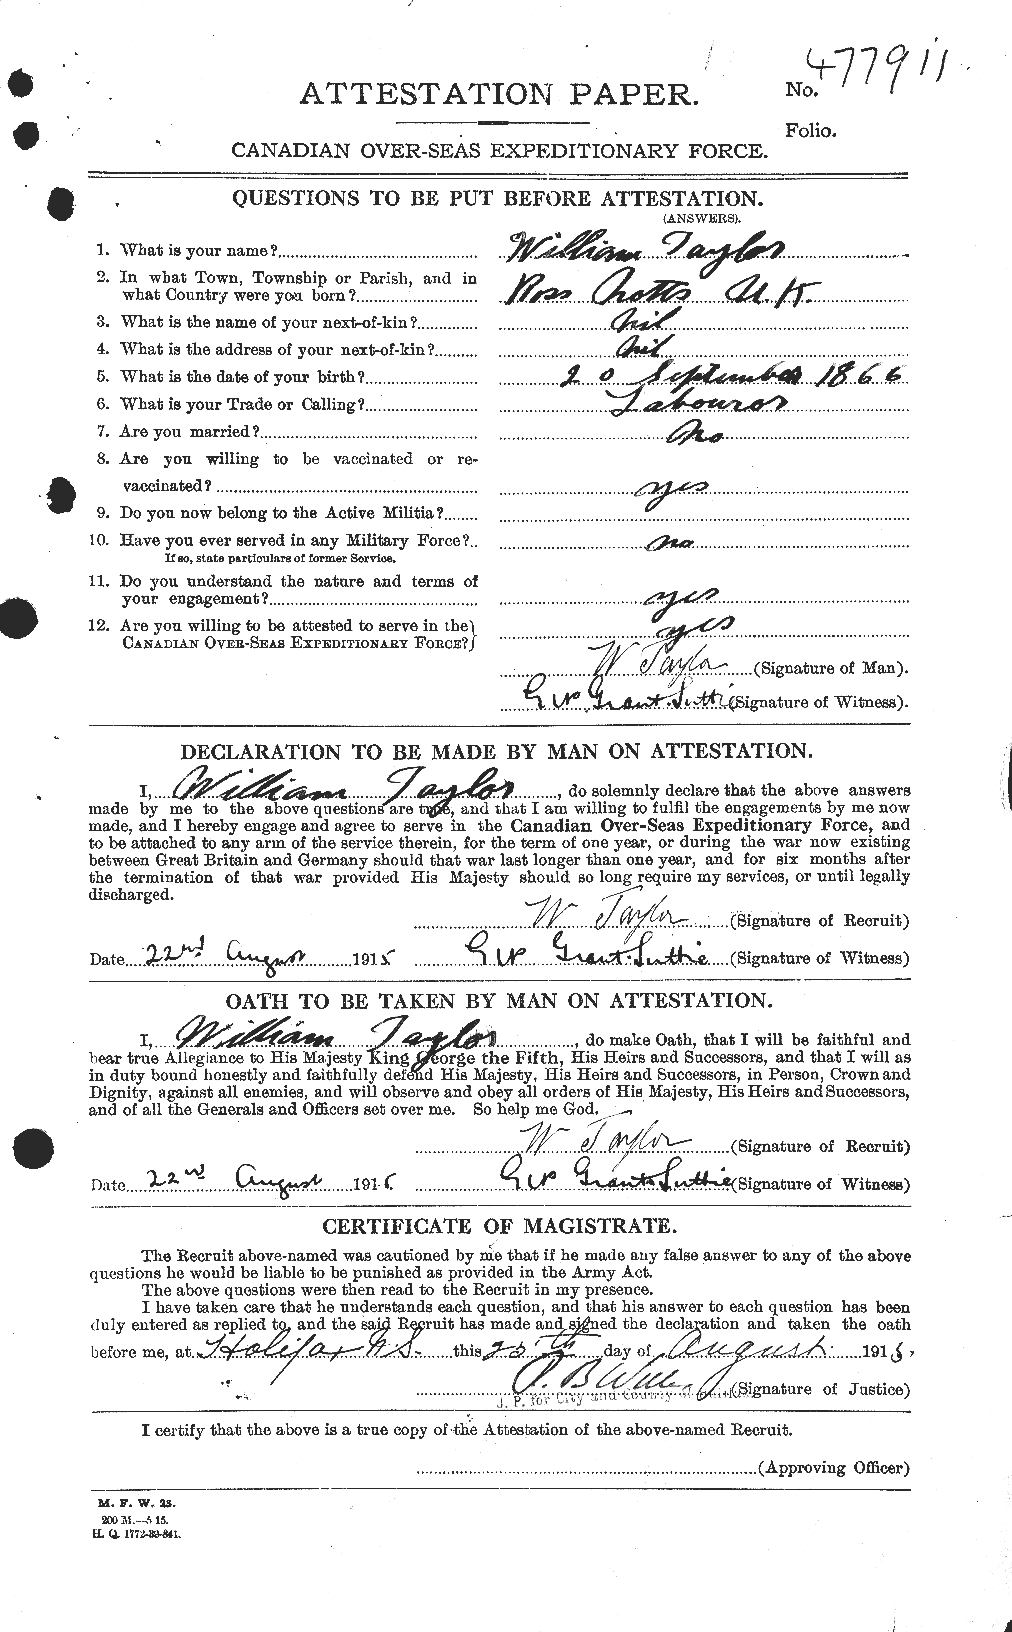 Dossiers du Personnel de la Première Guerre mondiale - CEC 628126a